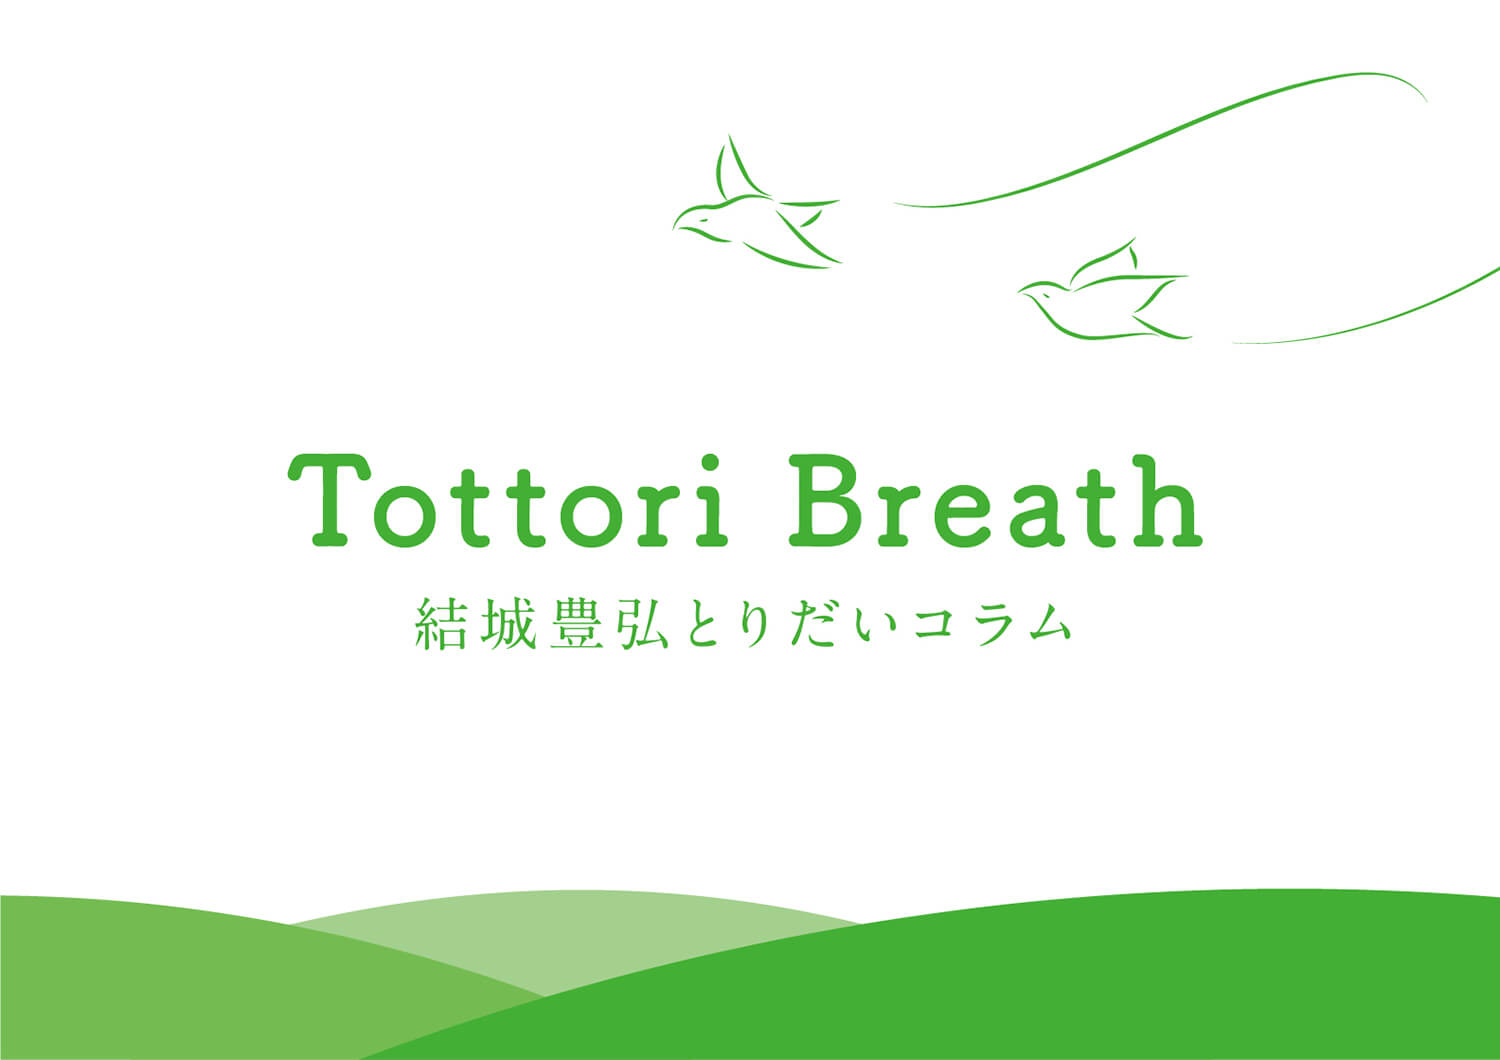 Tottori Breath